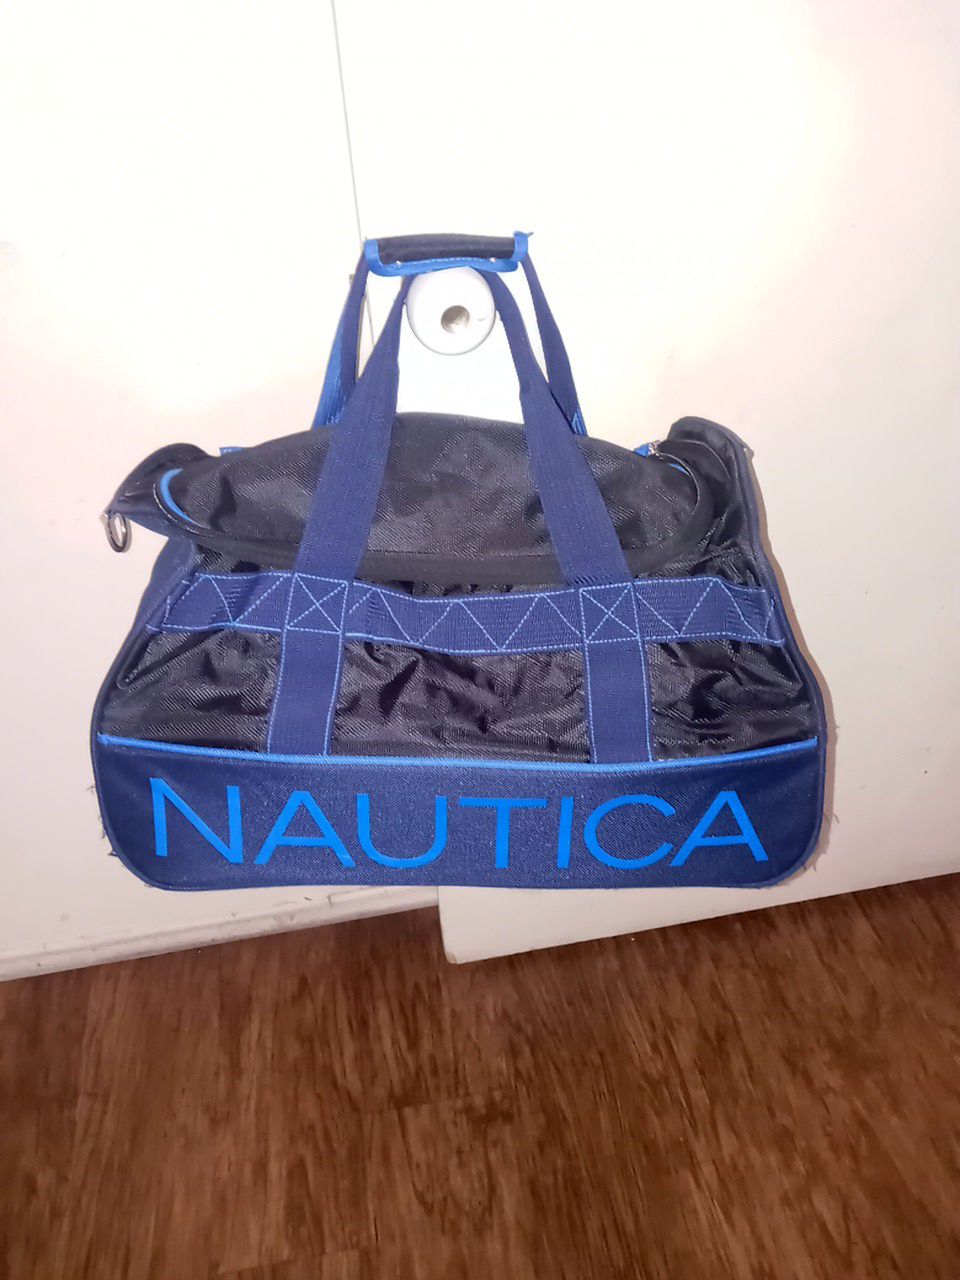 Nautica duffle bag